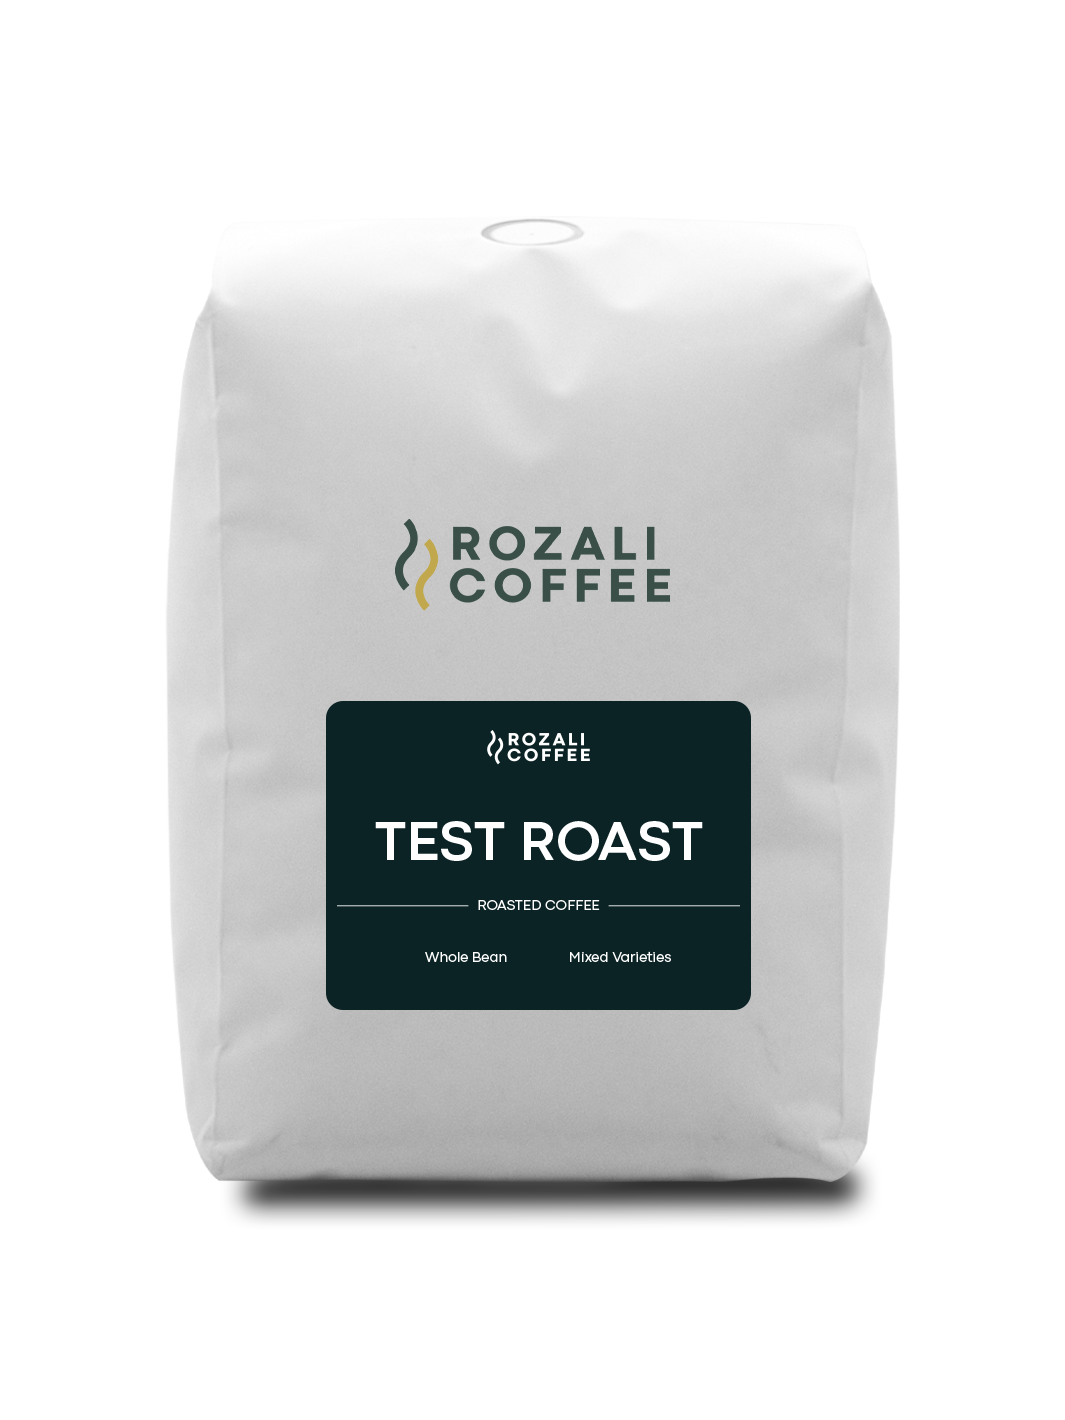 Test Roast